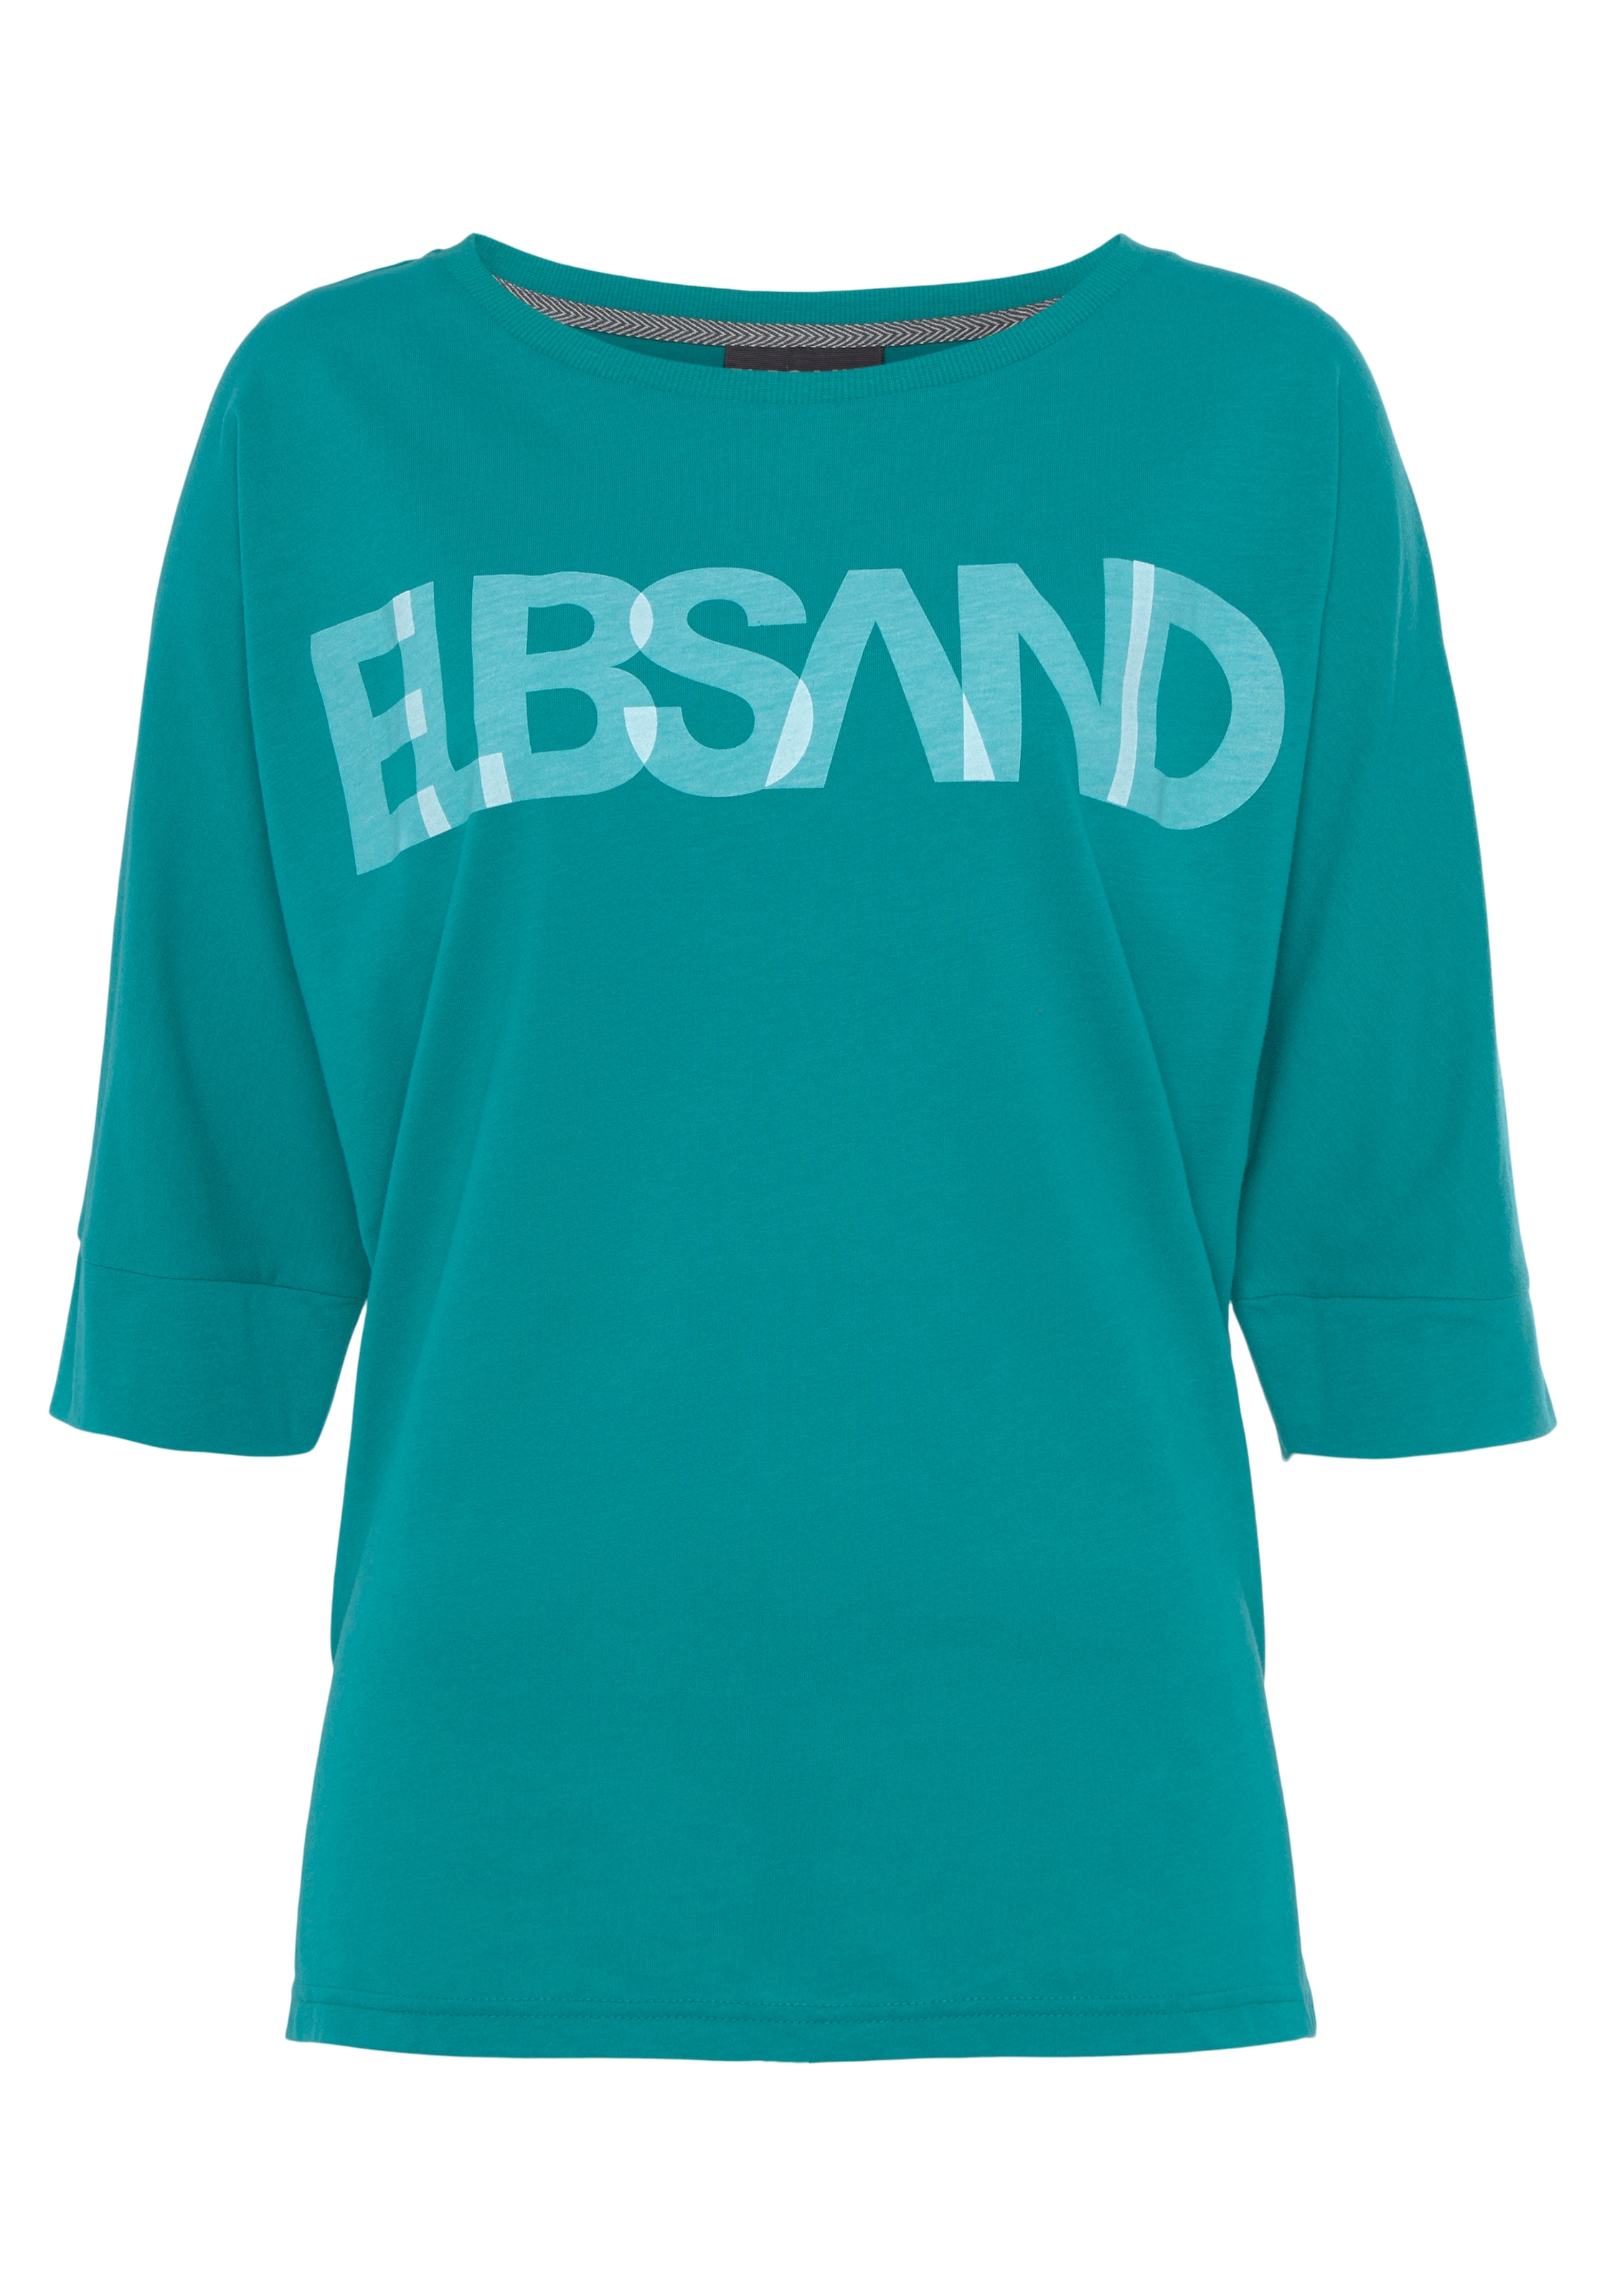 Elbsand 3/4-Arm-Shirt, mit Logodruck, Baumwoll-Mix, OTTO Passform bestellen Online lockere Shop im